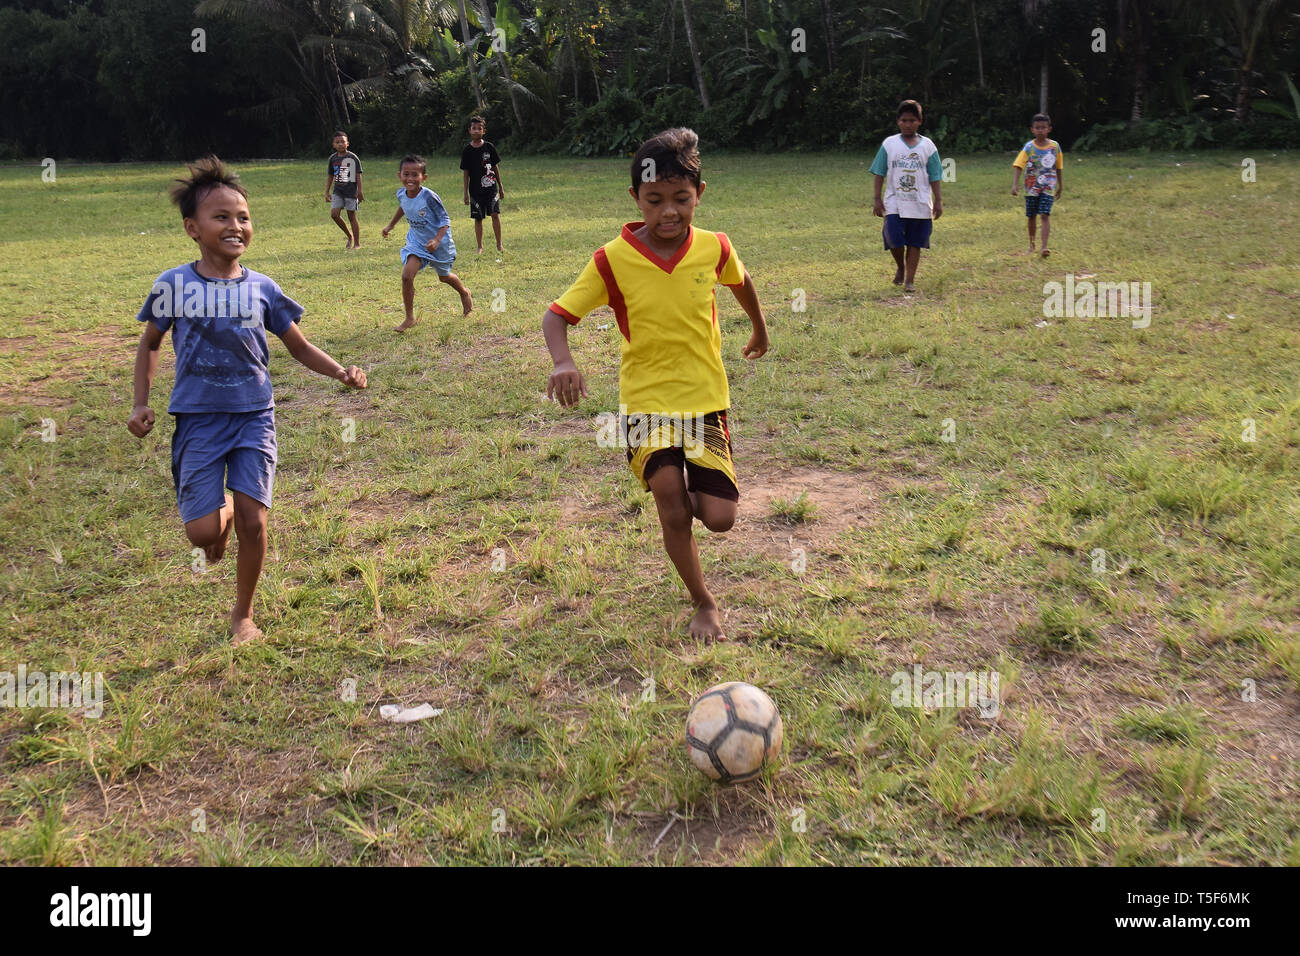 La fièvre de la Coupe du monde à des régions éloignées du pays, village enfants vraiment profiter de jouer au football avec leurs amis Banque D'Images